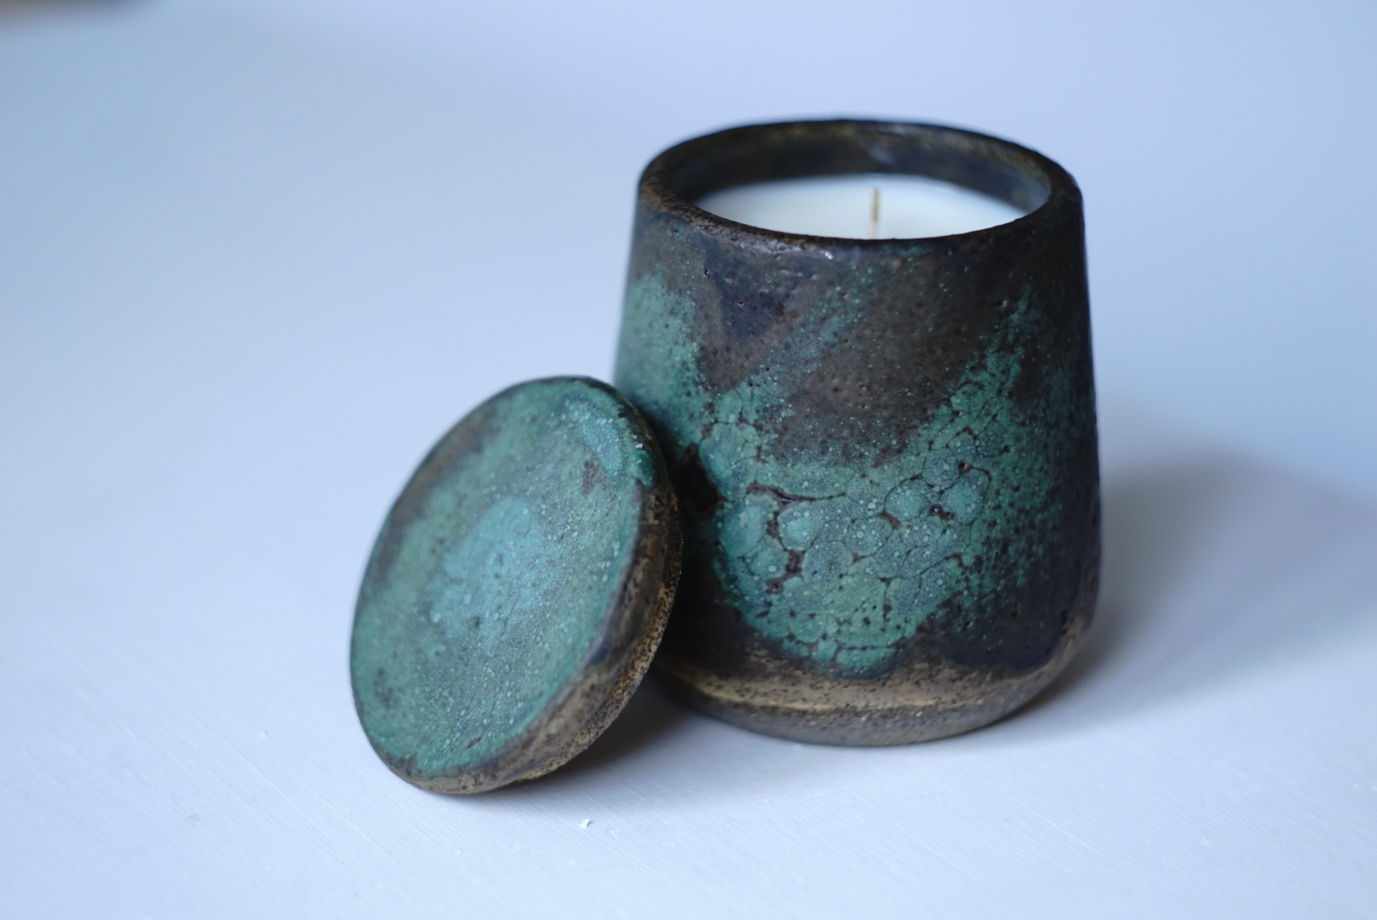 Cоевая свеча ручной работы с эфирным маслом пачули